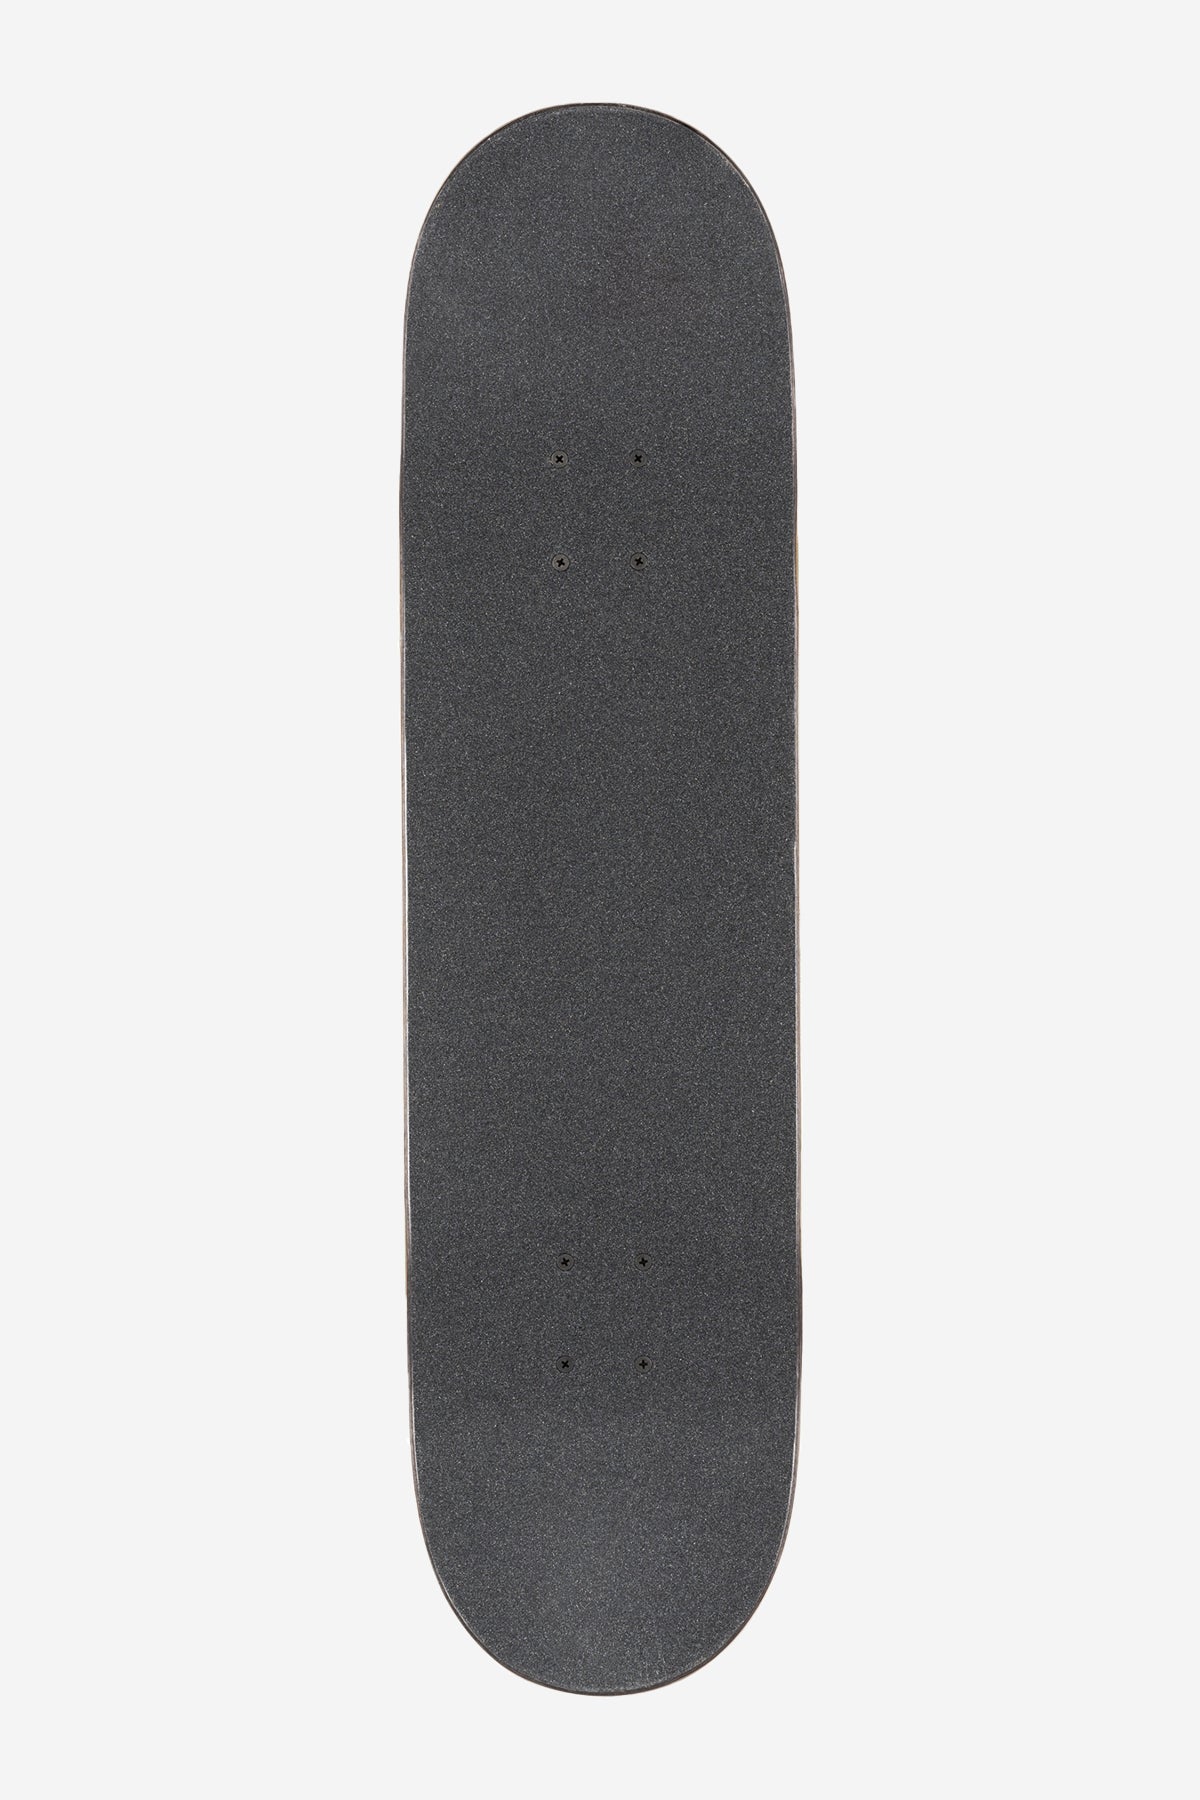 g1 supercolor black pond 8.125" complete skateboard